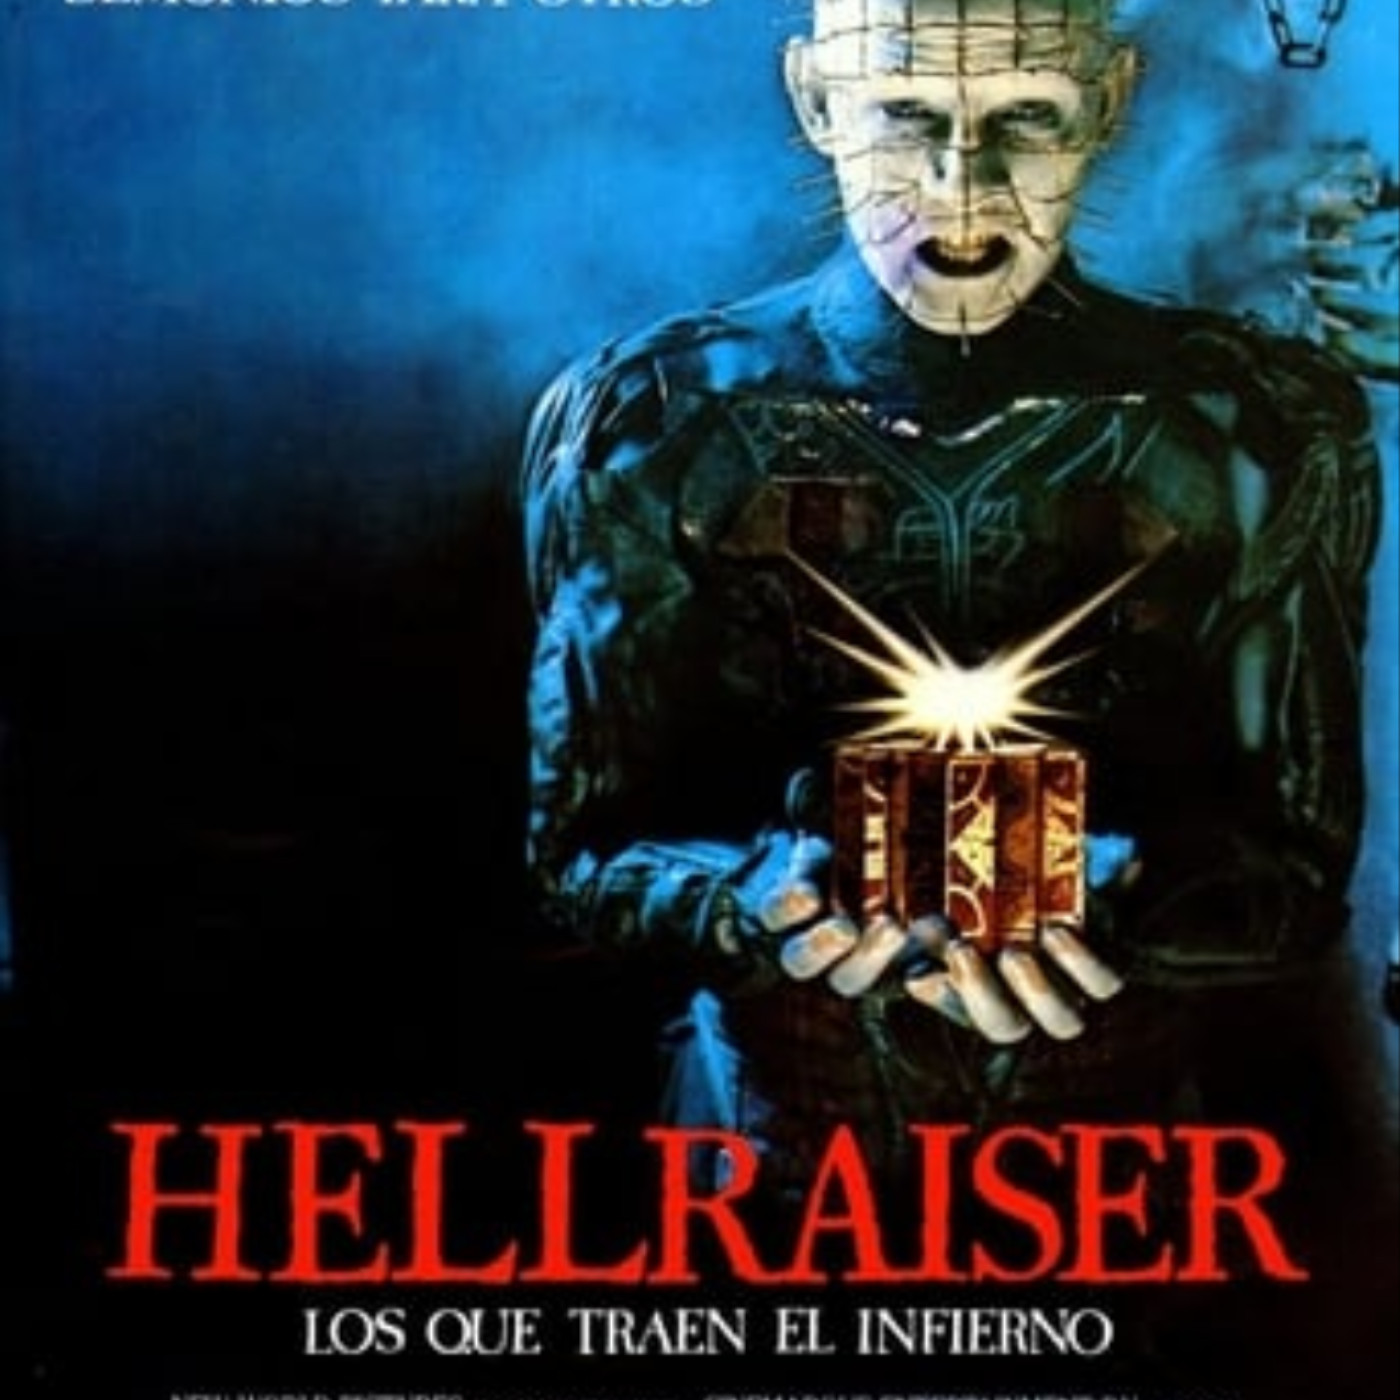 Ver Hellraiser 1987 online gratis en español y latino | Podcast on SoundOn